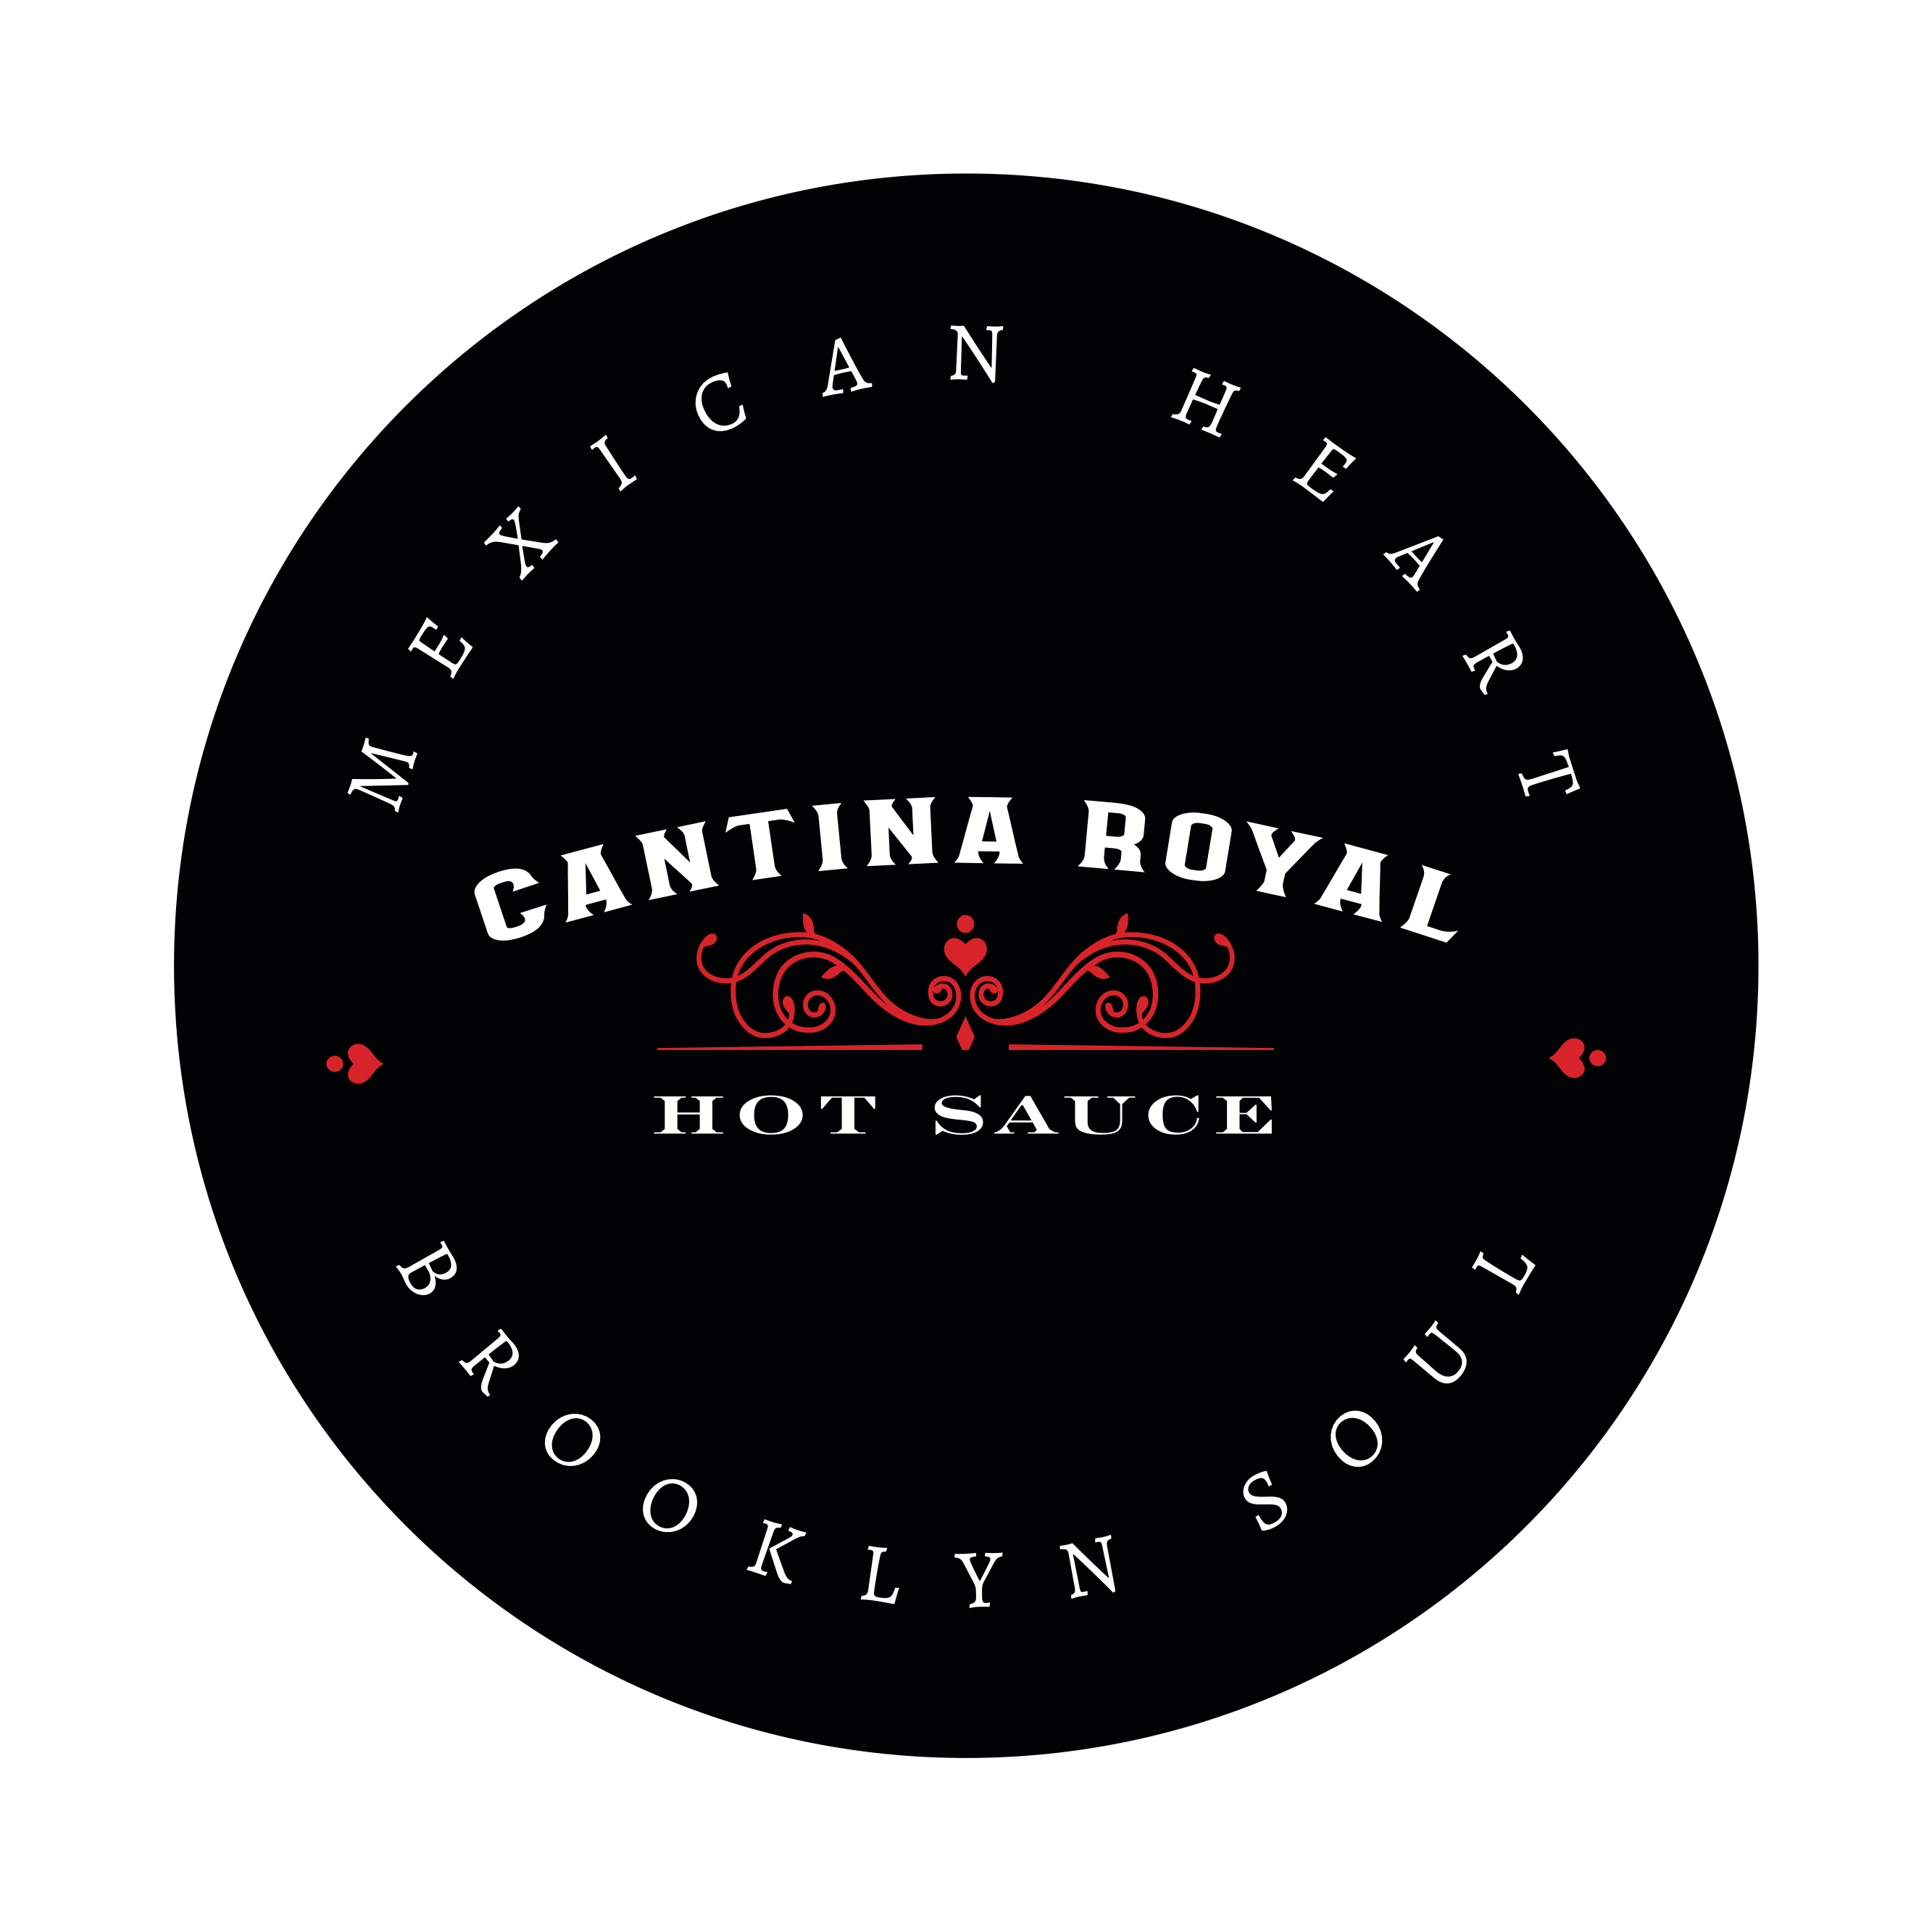 Tomasa Hot Sauce - Featured Hot Ones Season 15 – Cantina Royal Hot